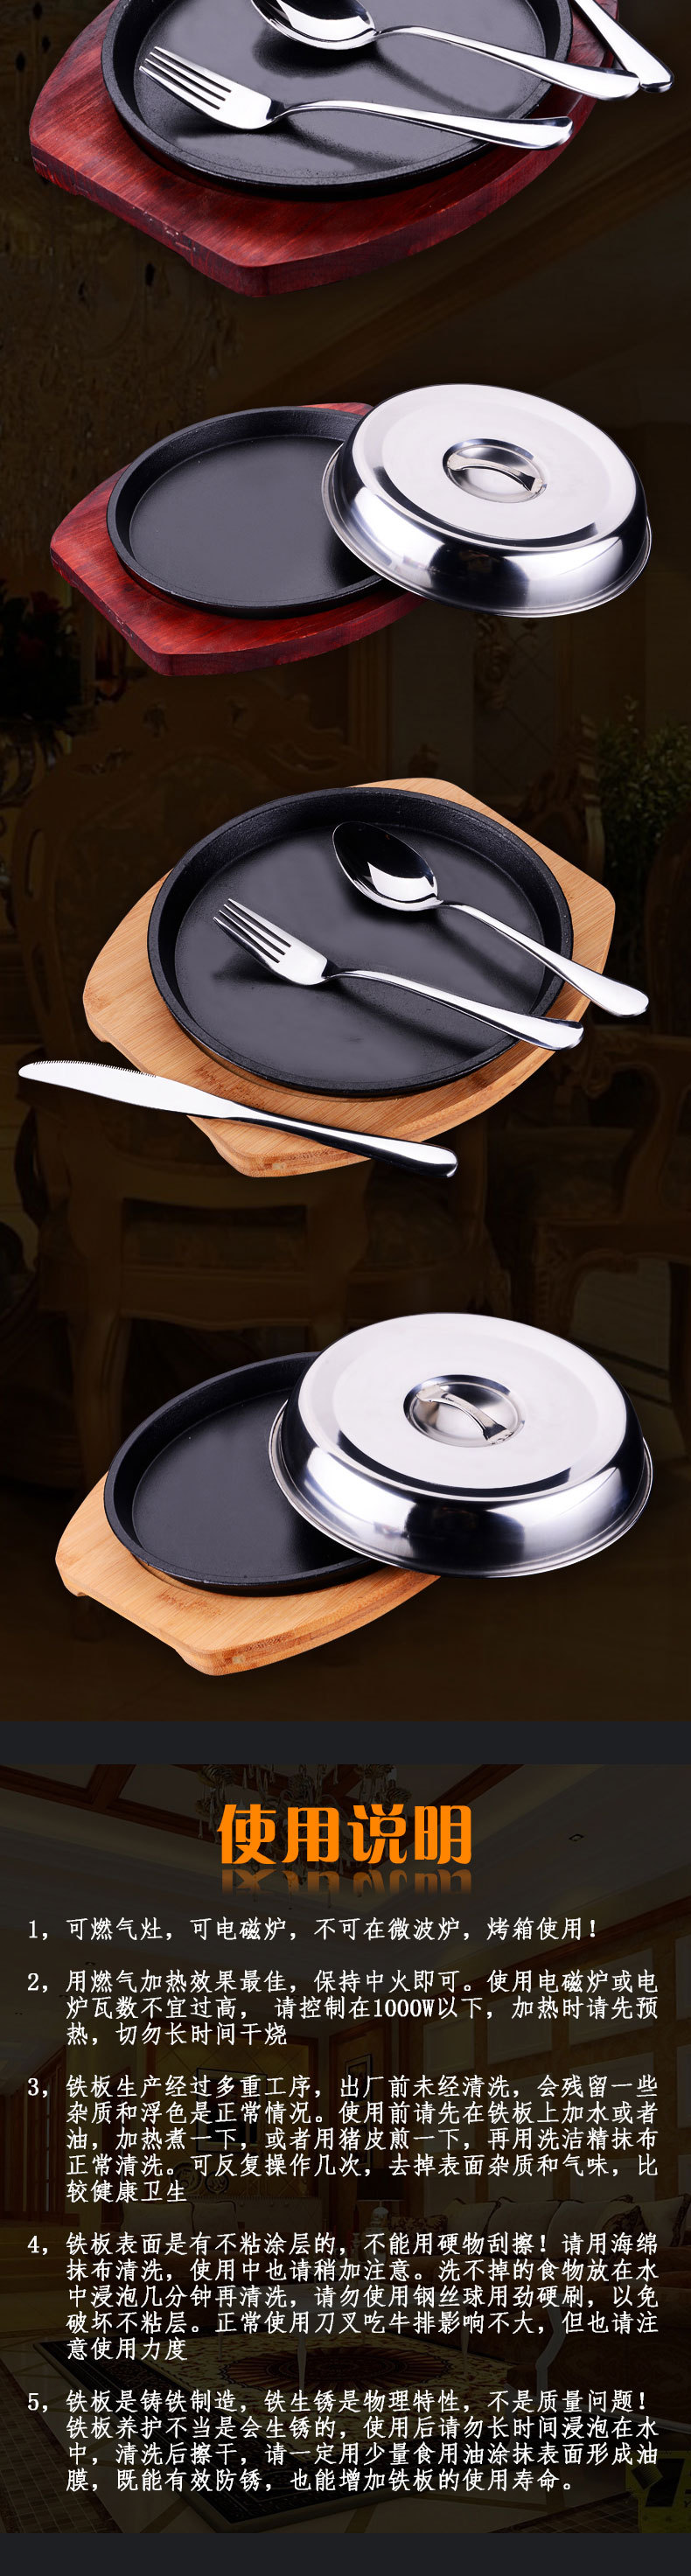 双杭牛排铁板烧韩式西餐牛排铁板烧烤盘家用商用铁板烧煎牛排